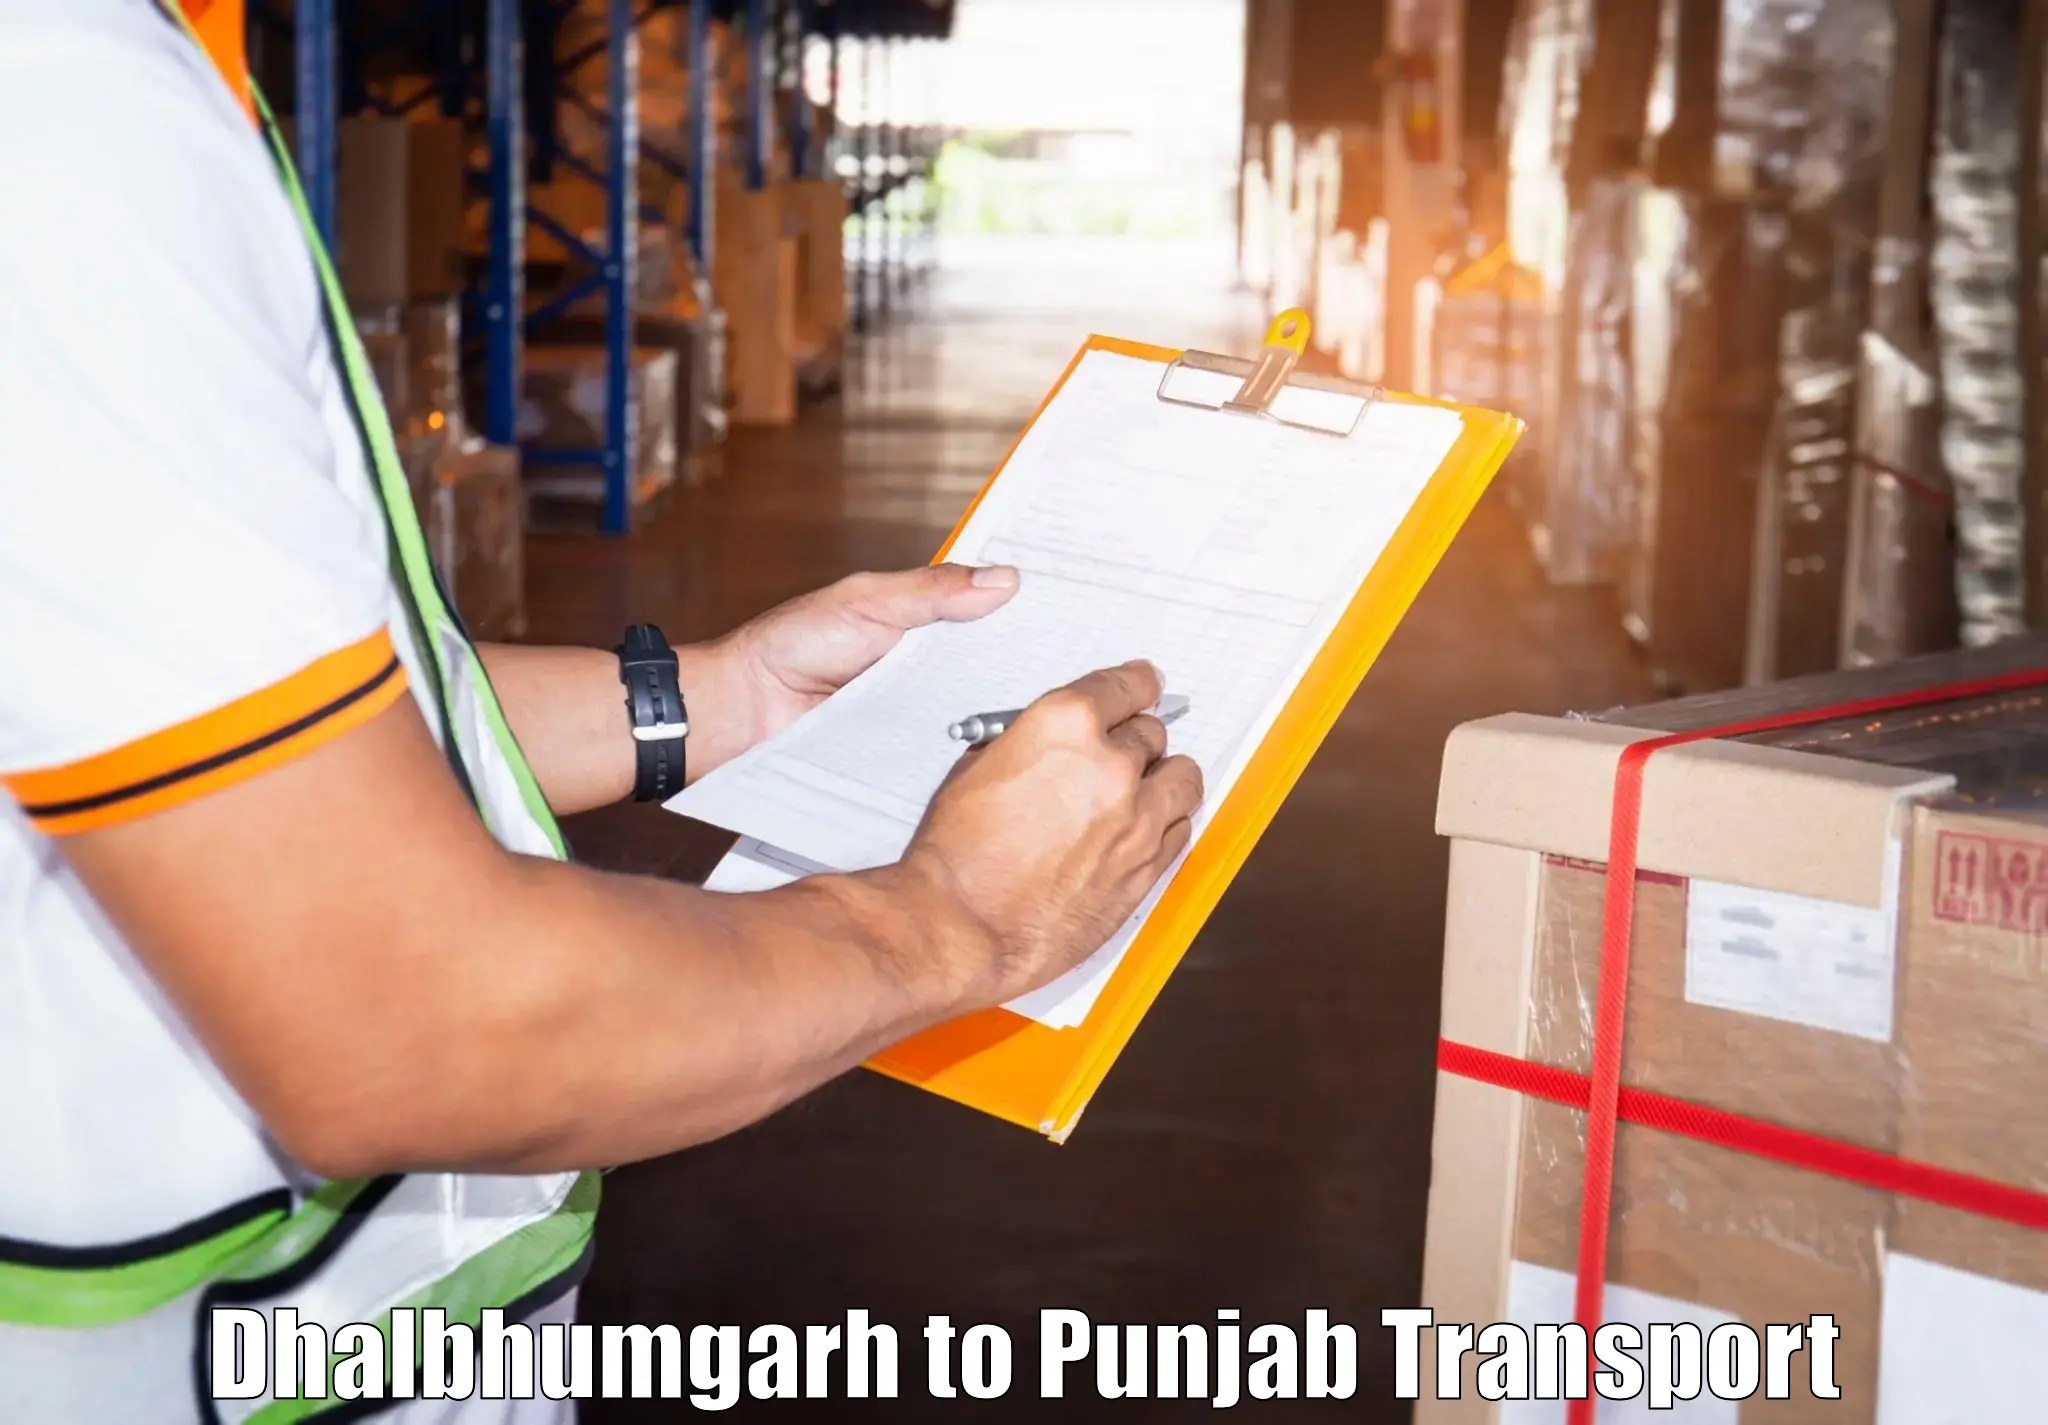 Transport services Dhalbhumgarh to Dinanagar